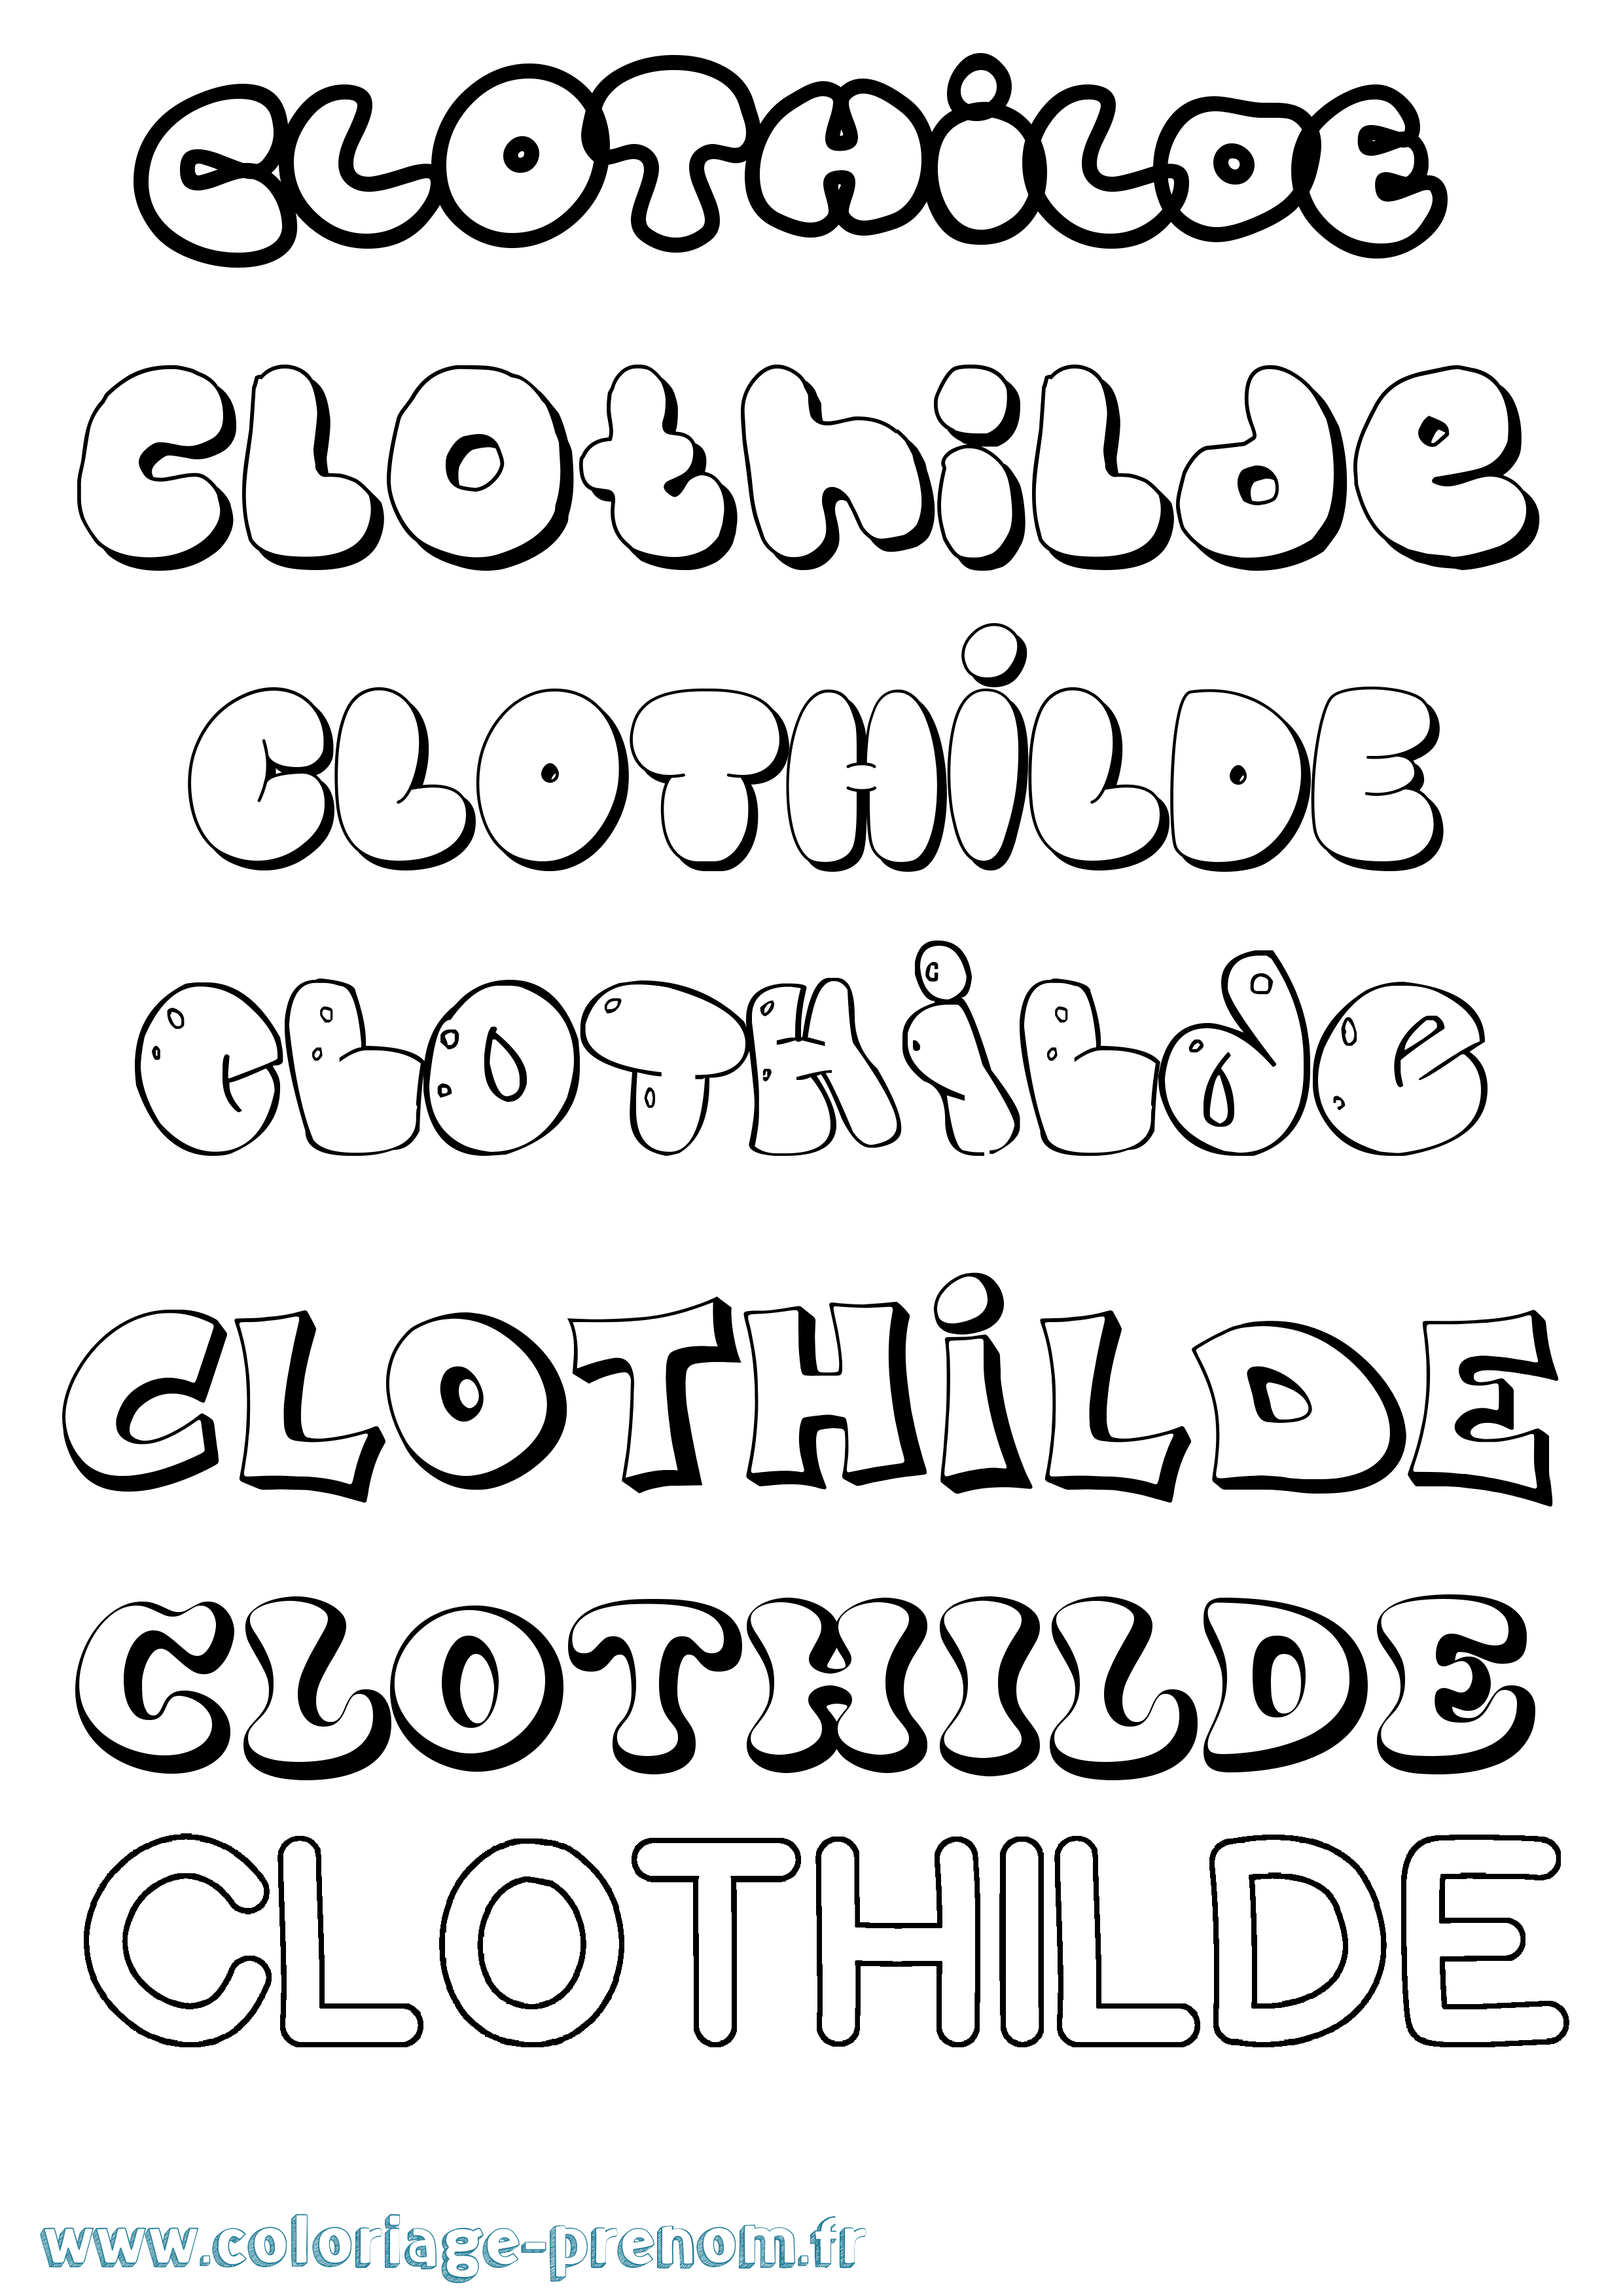 Coloriage prénom Clothilde